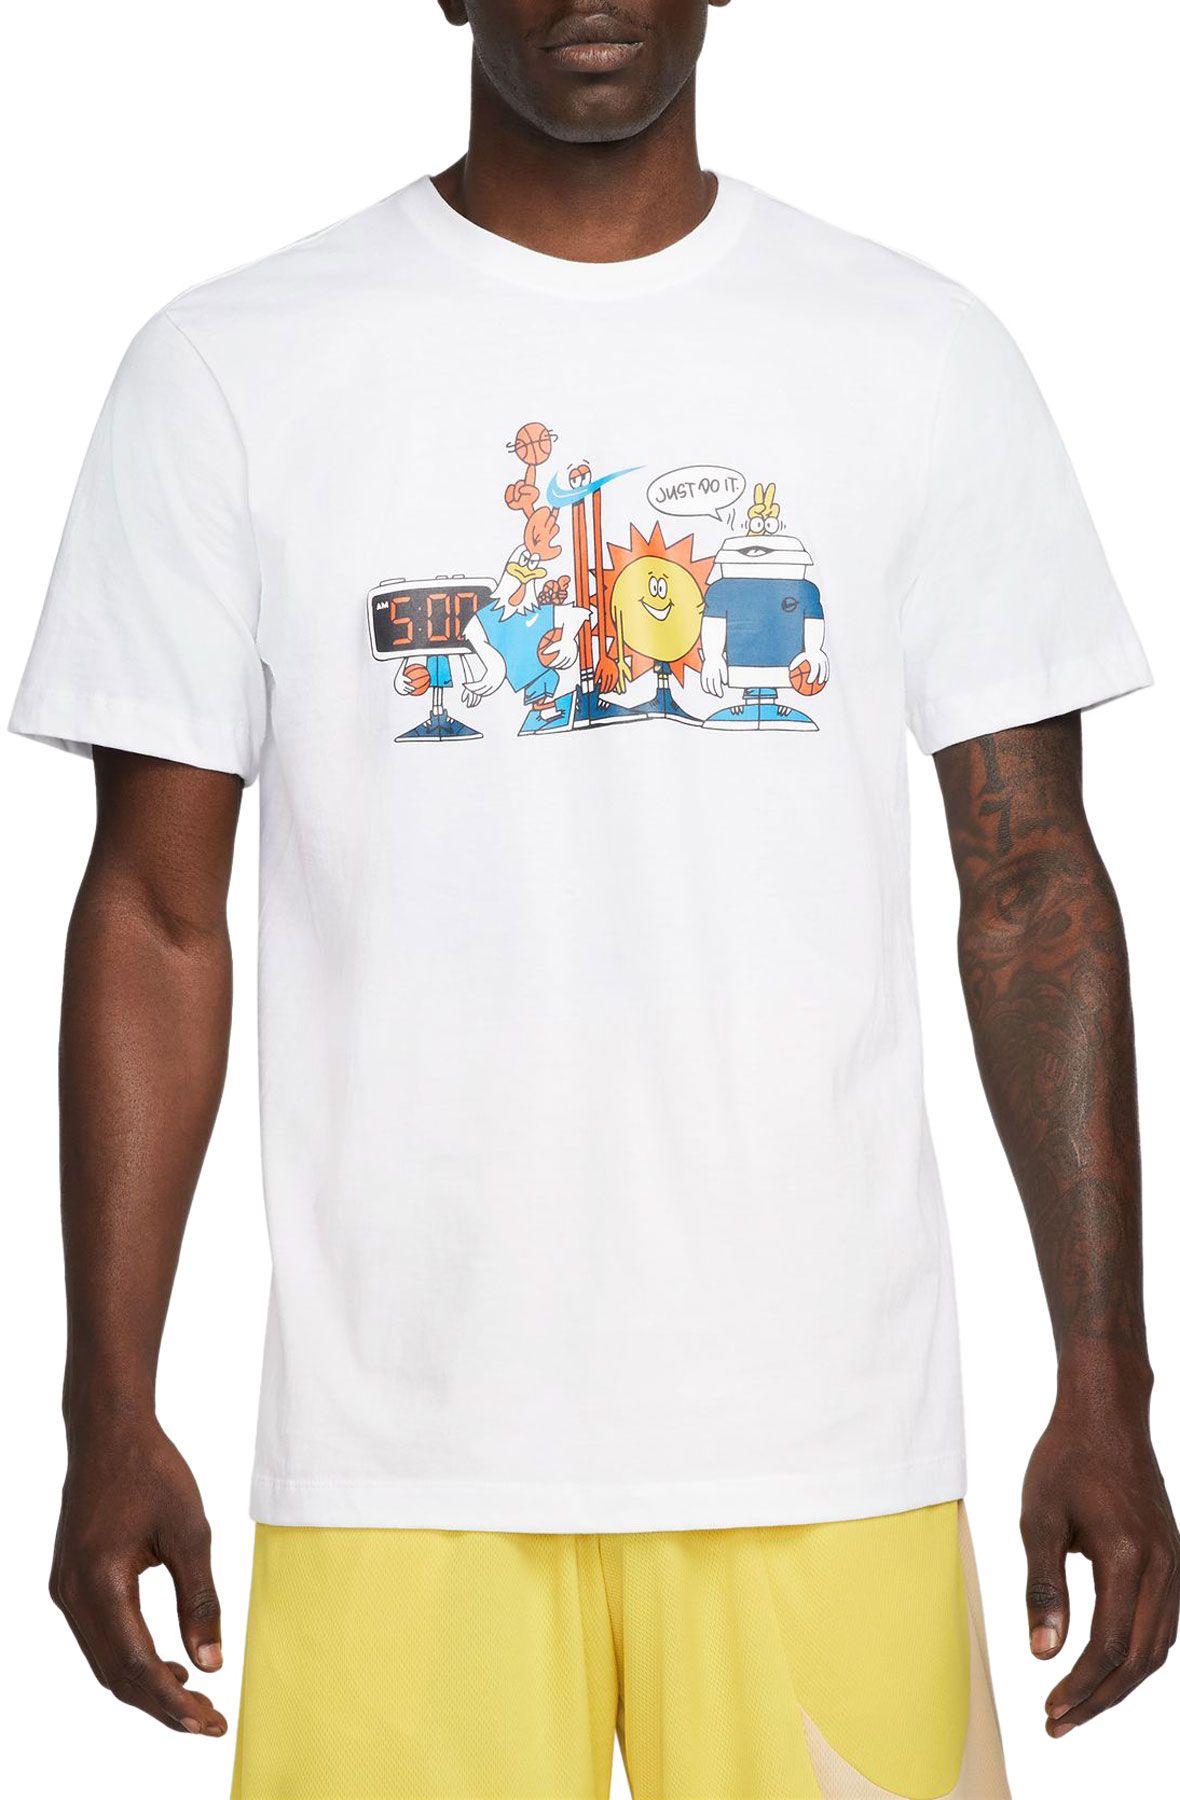 NIKE Basketball T-Shirt DN3003 100 - Shiekh